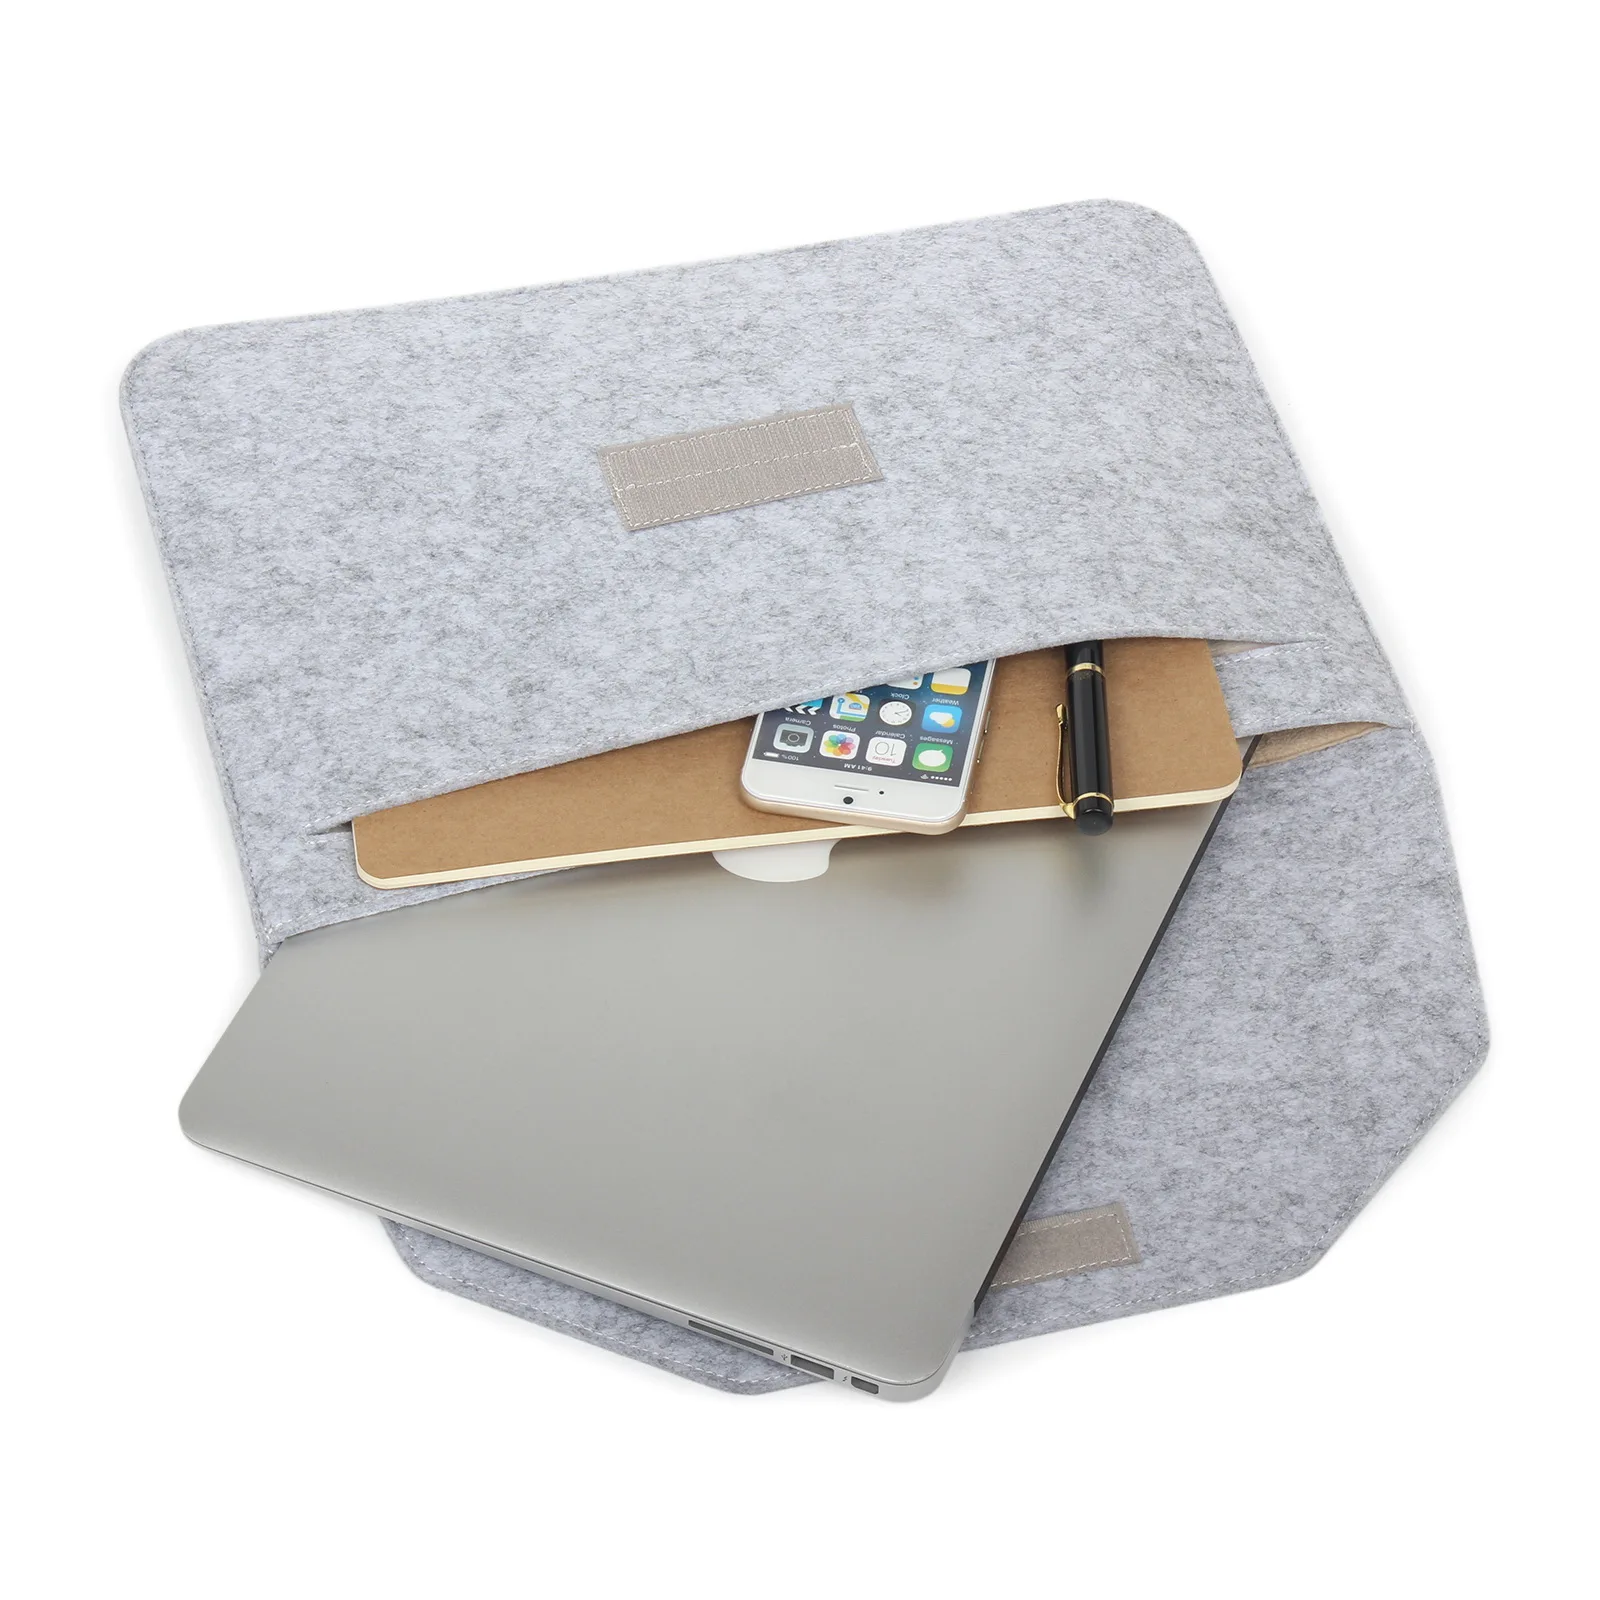 Сумка для ноутбука Macbook Air Pro retina 11, 12, 13, 15 дюймов, ноутбук, ПК, планшет, мягкий чехол, чехол для Mac book Air Pro